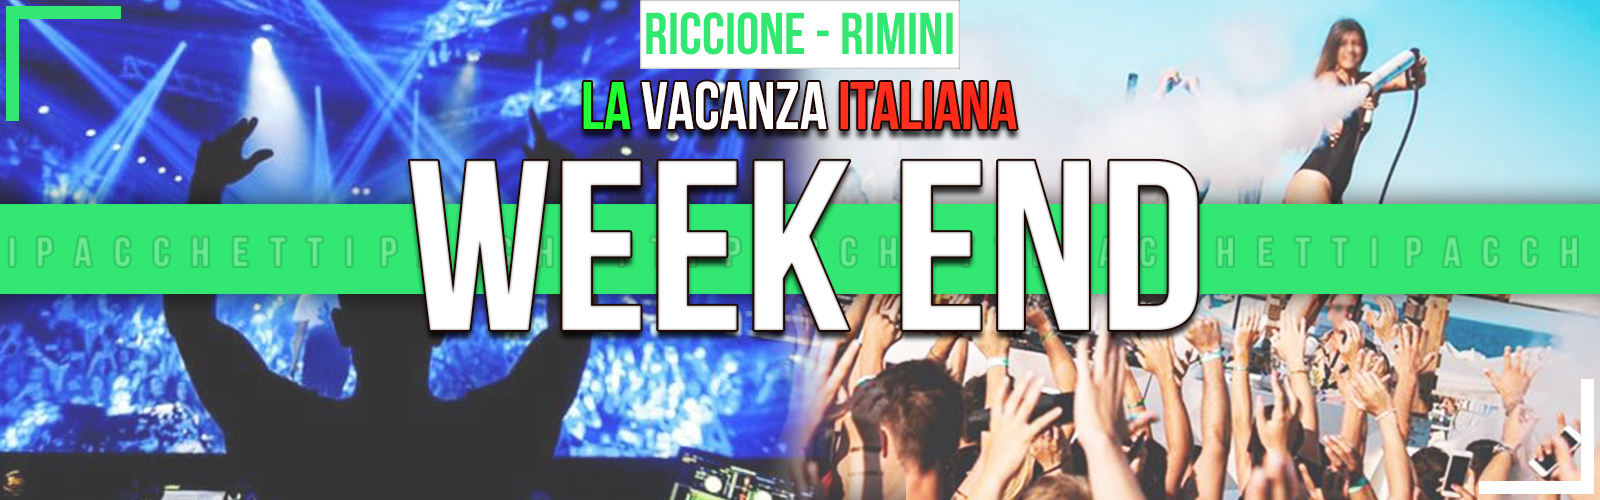 Pacchetto Vacanza WEEKEND Riccione Rimini Hotel Discoteche La Vacanza Italiana